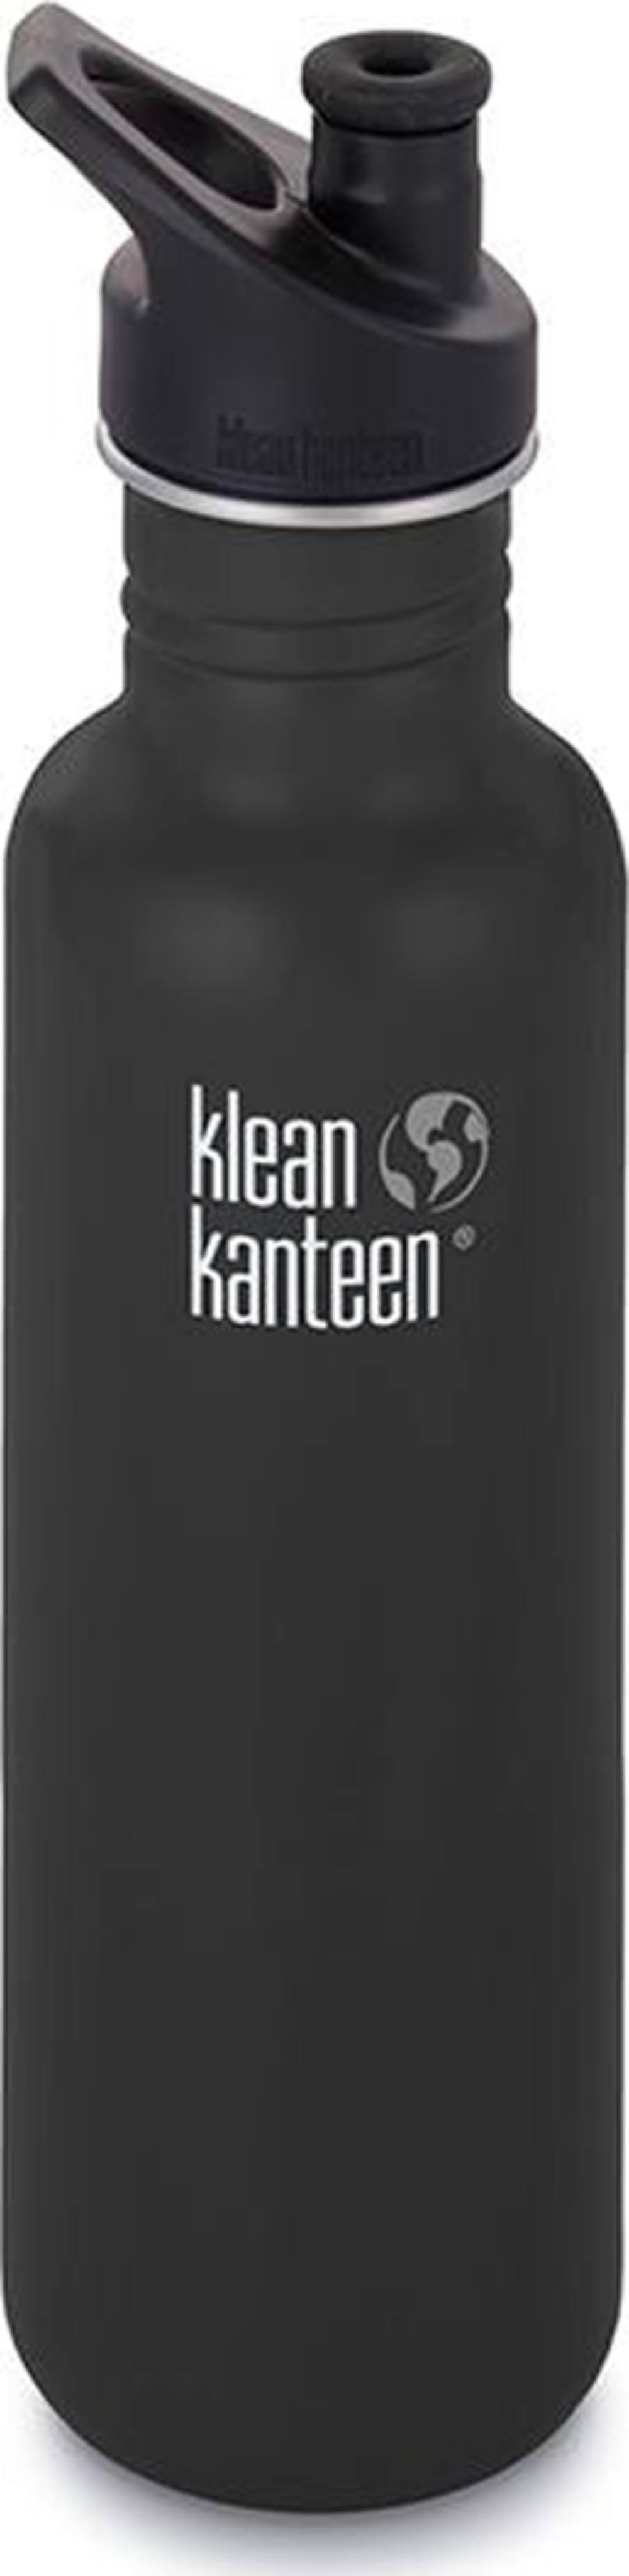 Klean Kanteen Classic Bottle with Loop Cap - Shale Black, 27oz